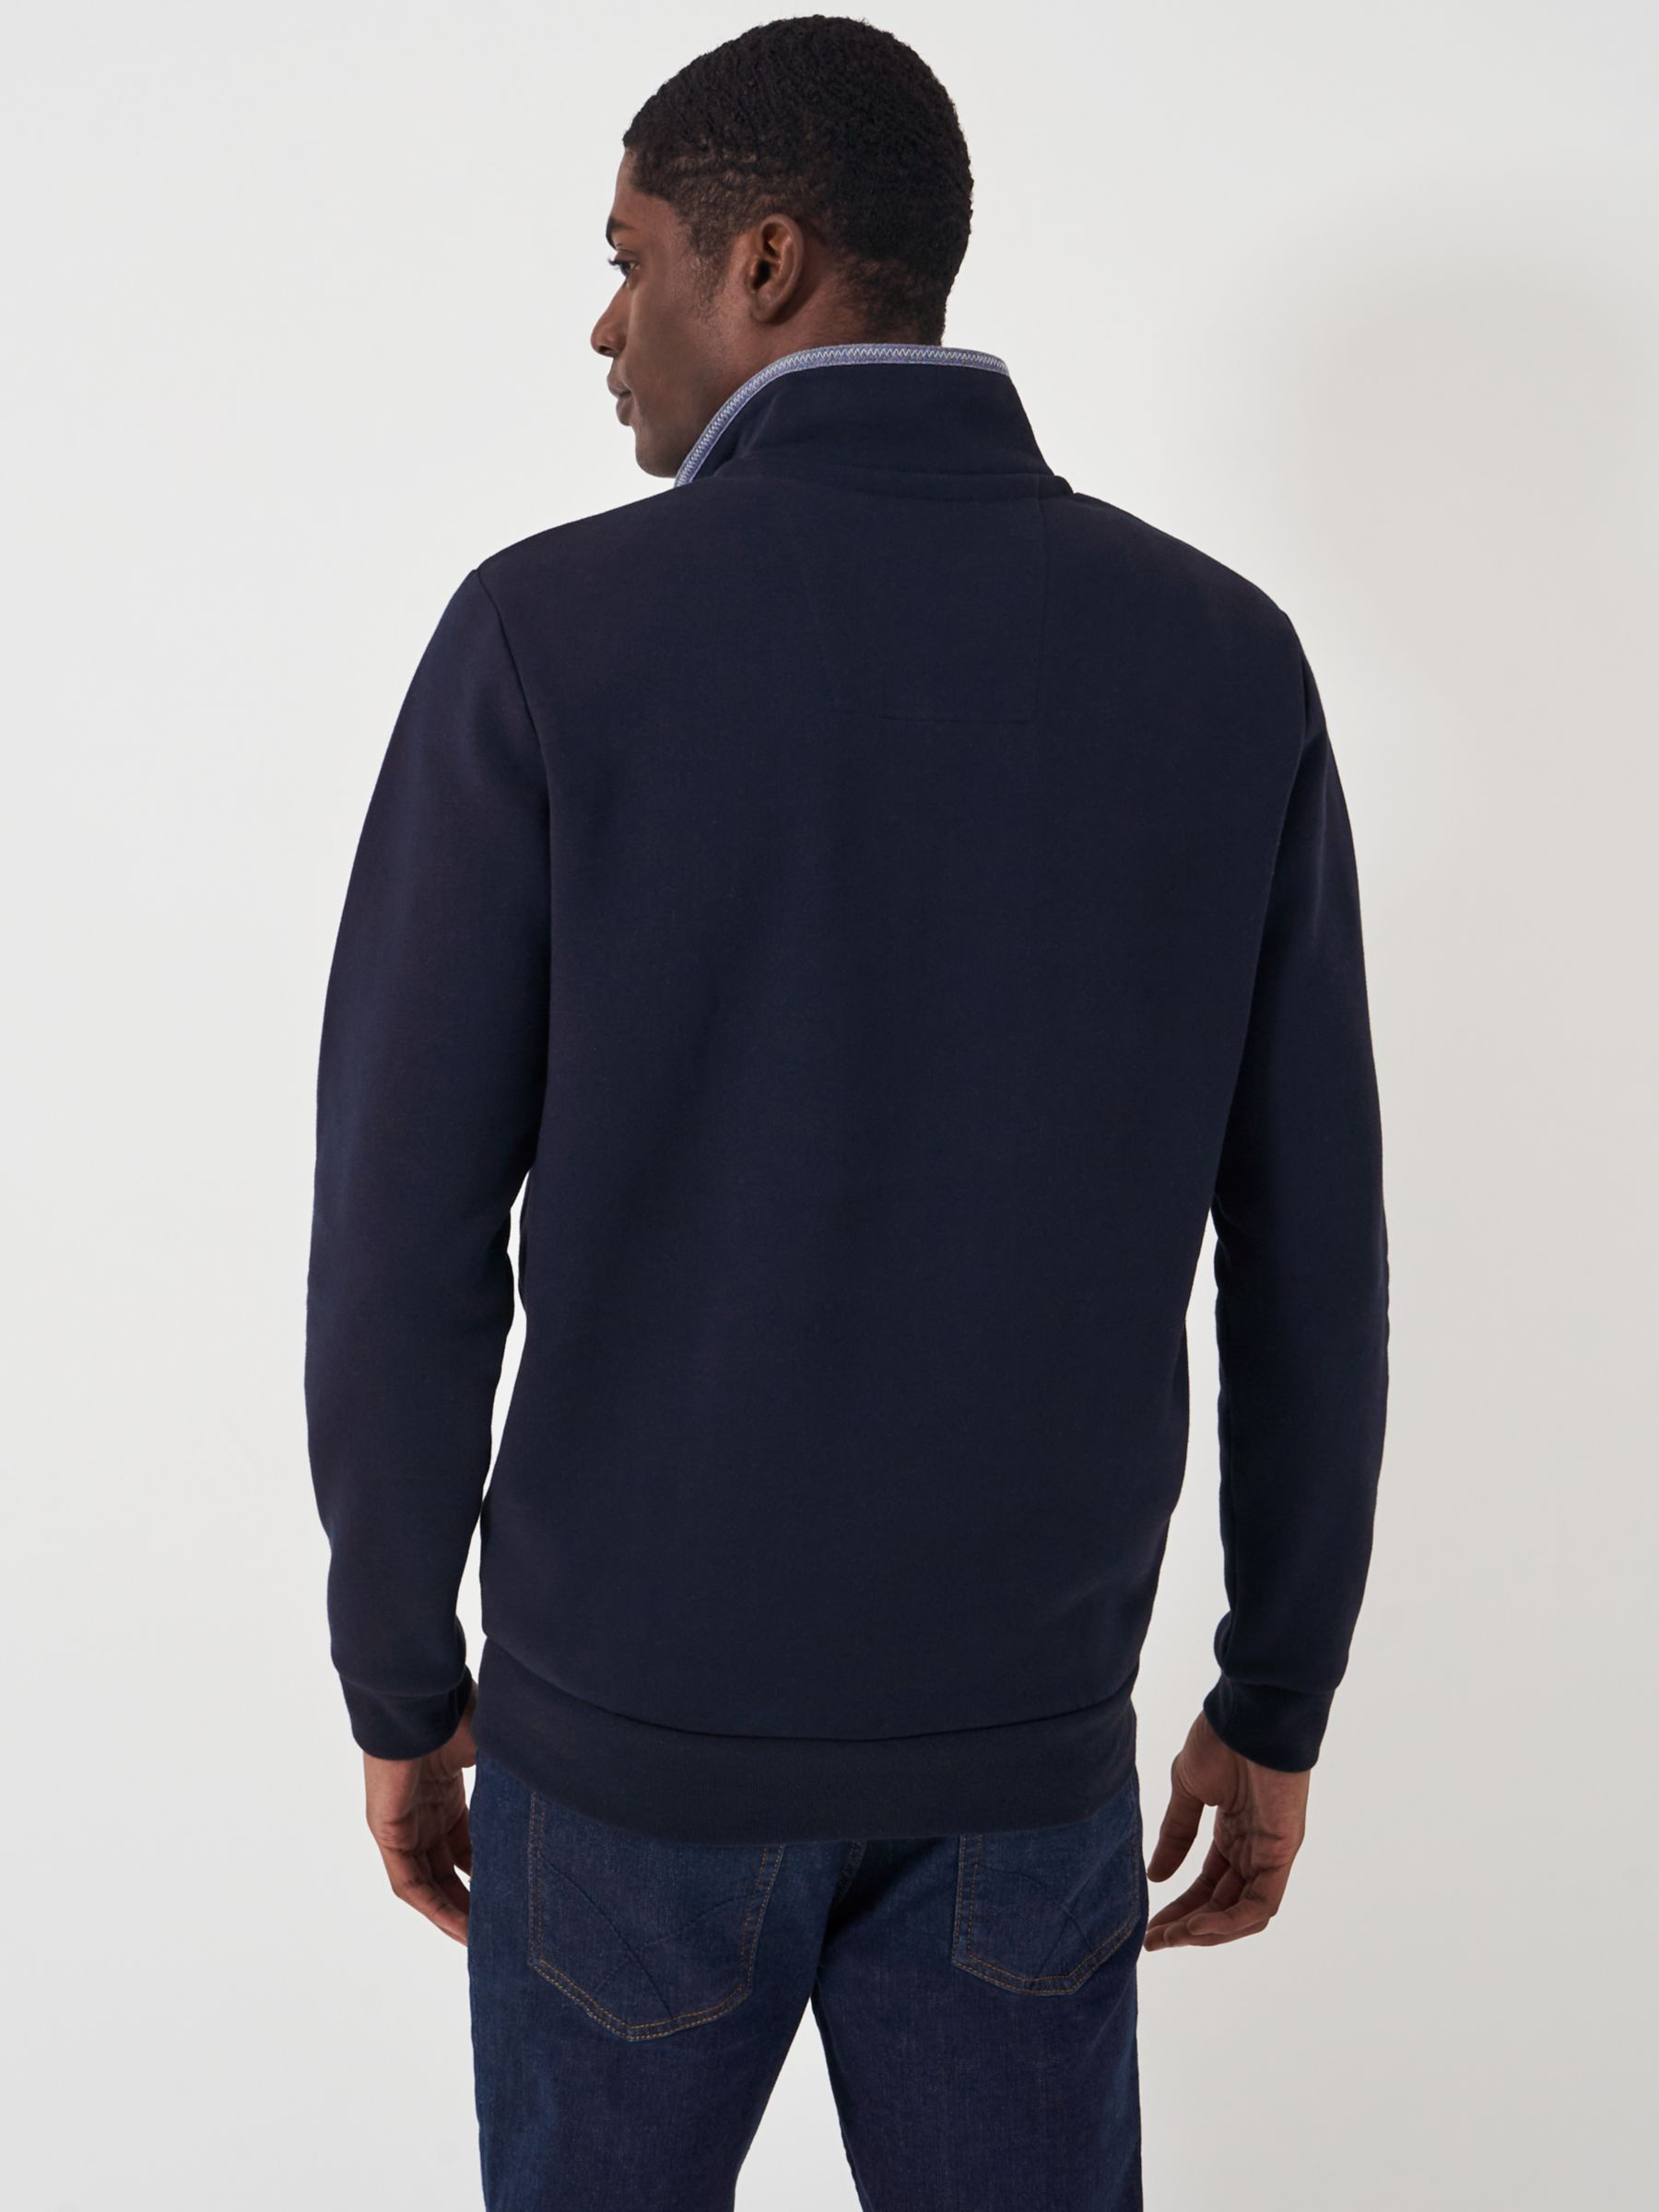 Crew Clothing Classic Half Zip Sweatshirt, Navy, XL